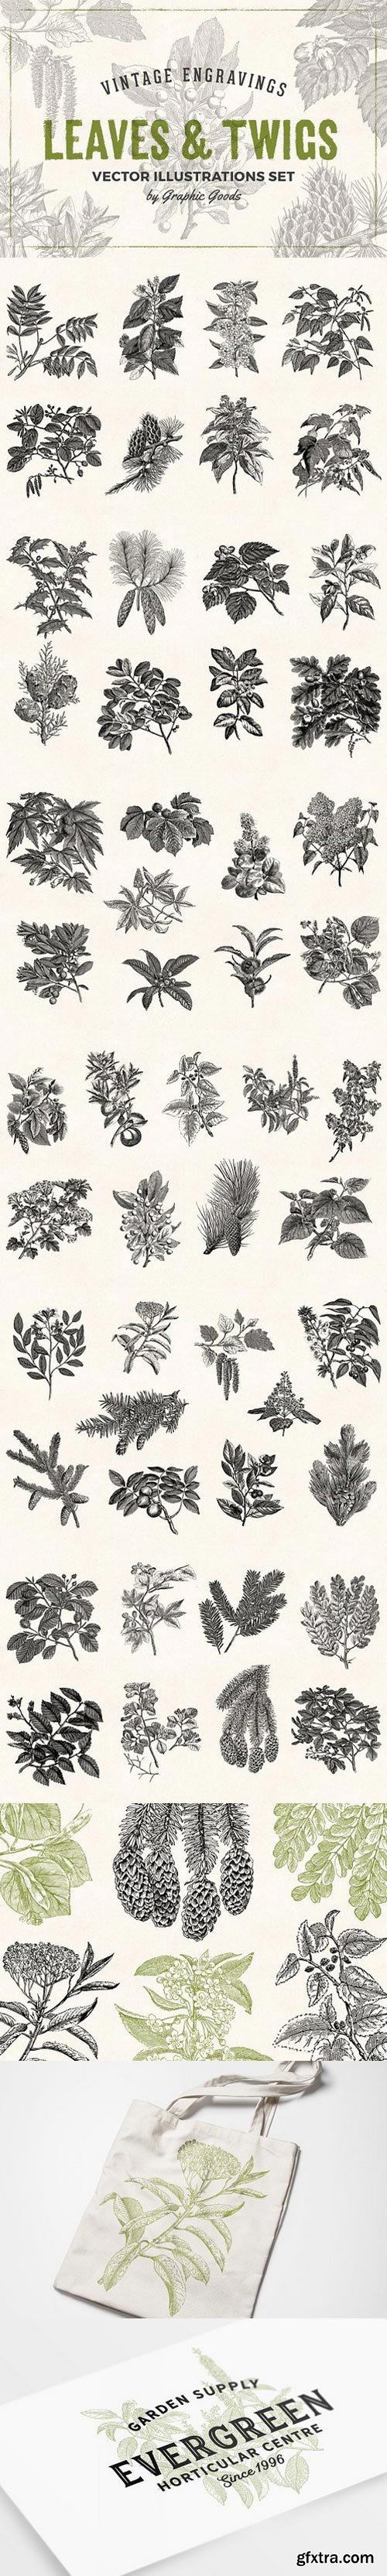 CM - Leaves & Twigs Vintage Illustrations 1633688